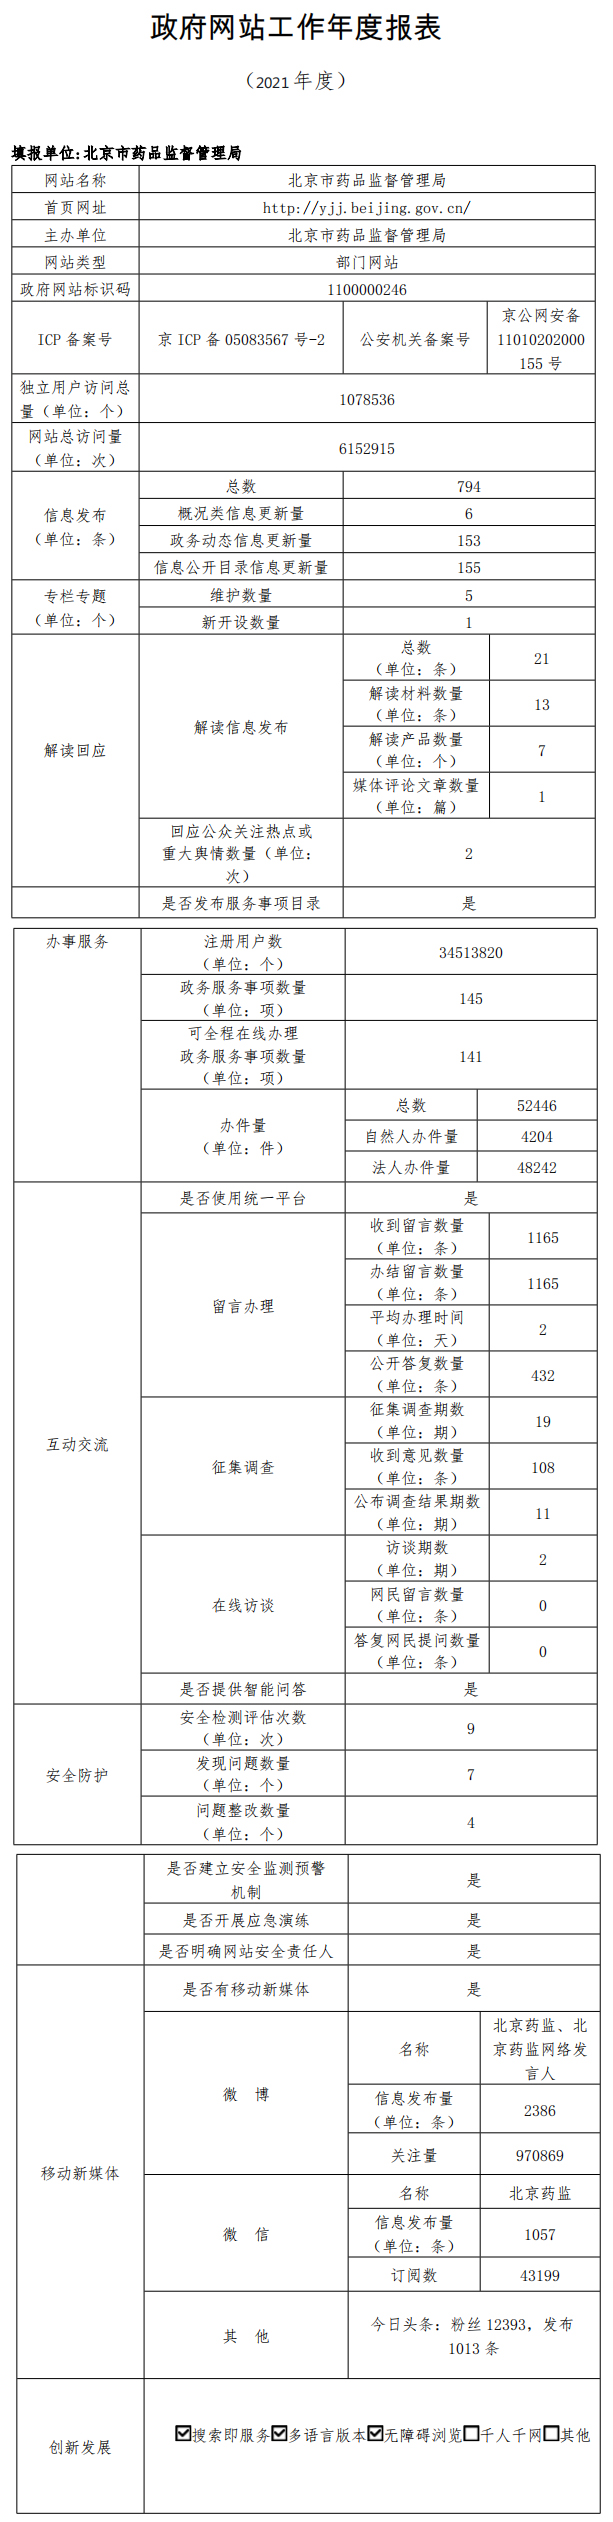 北京市藥品監督管理局2021年政府網站年度工作報表